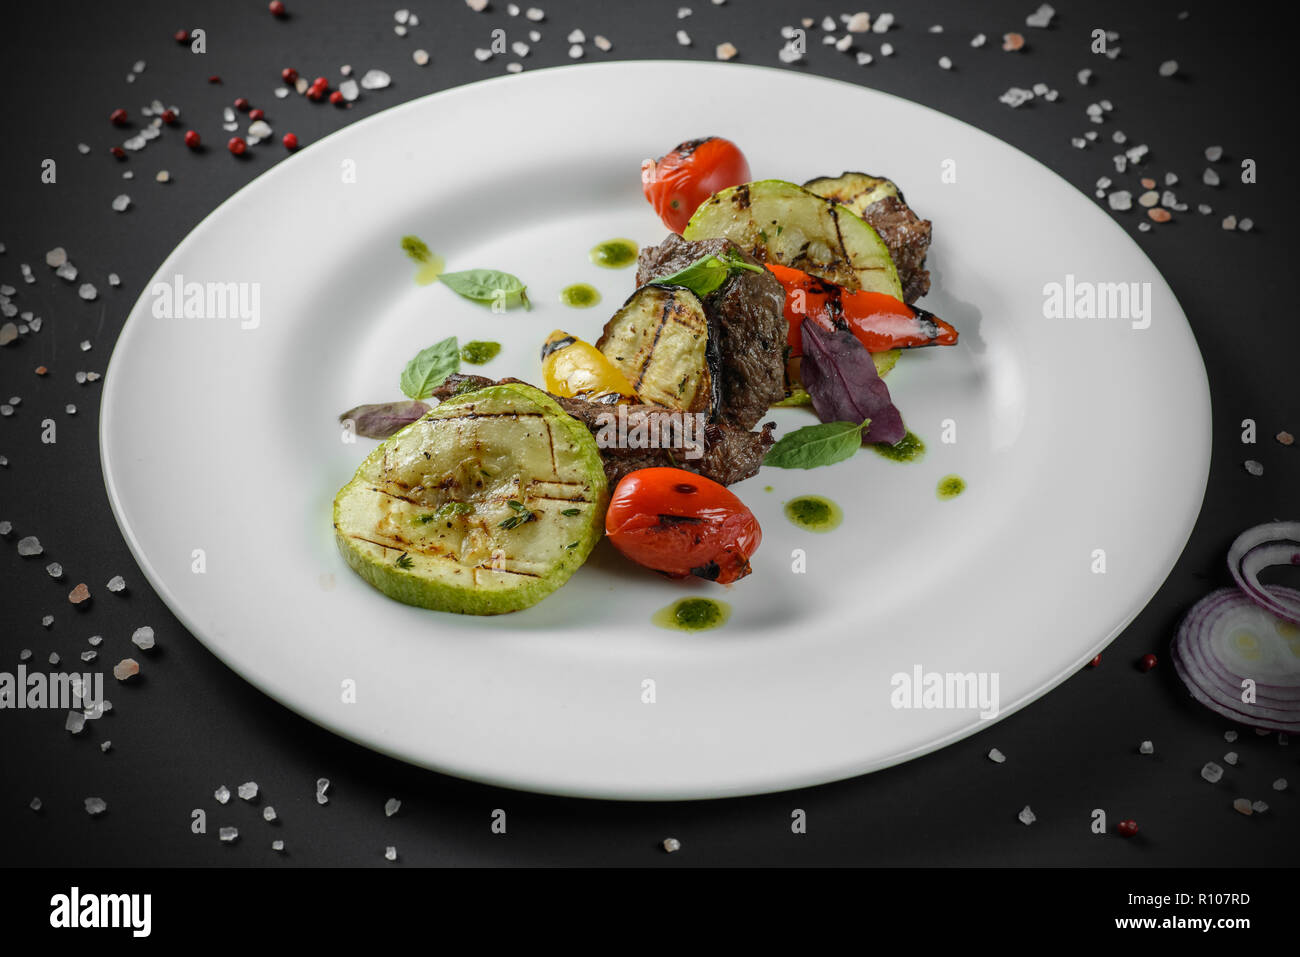 Légumes grillés avec de la viande décoré sur fond sombre Banque D'Images